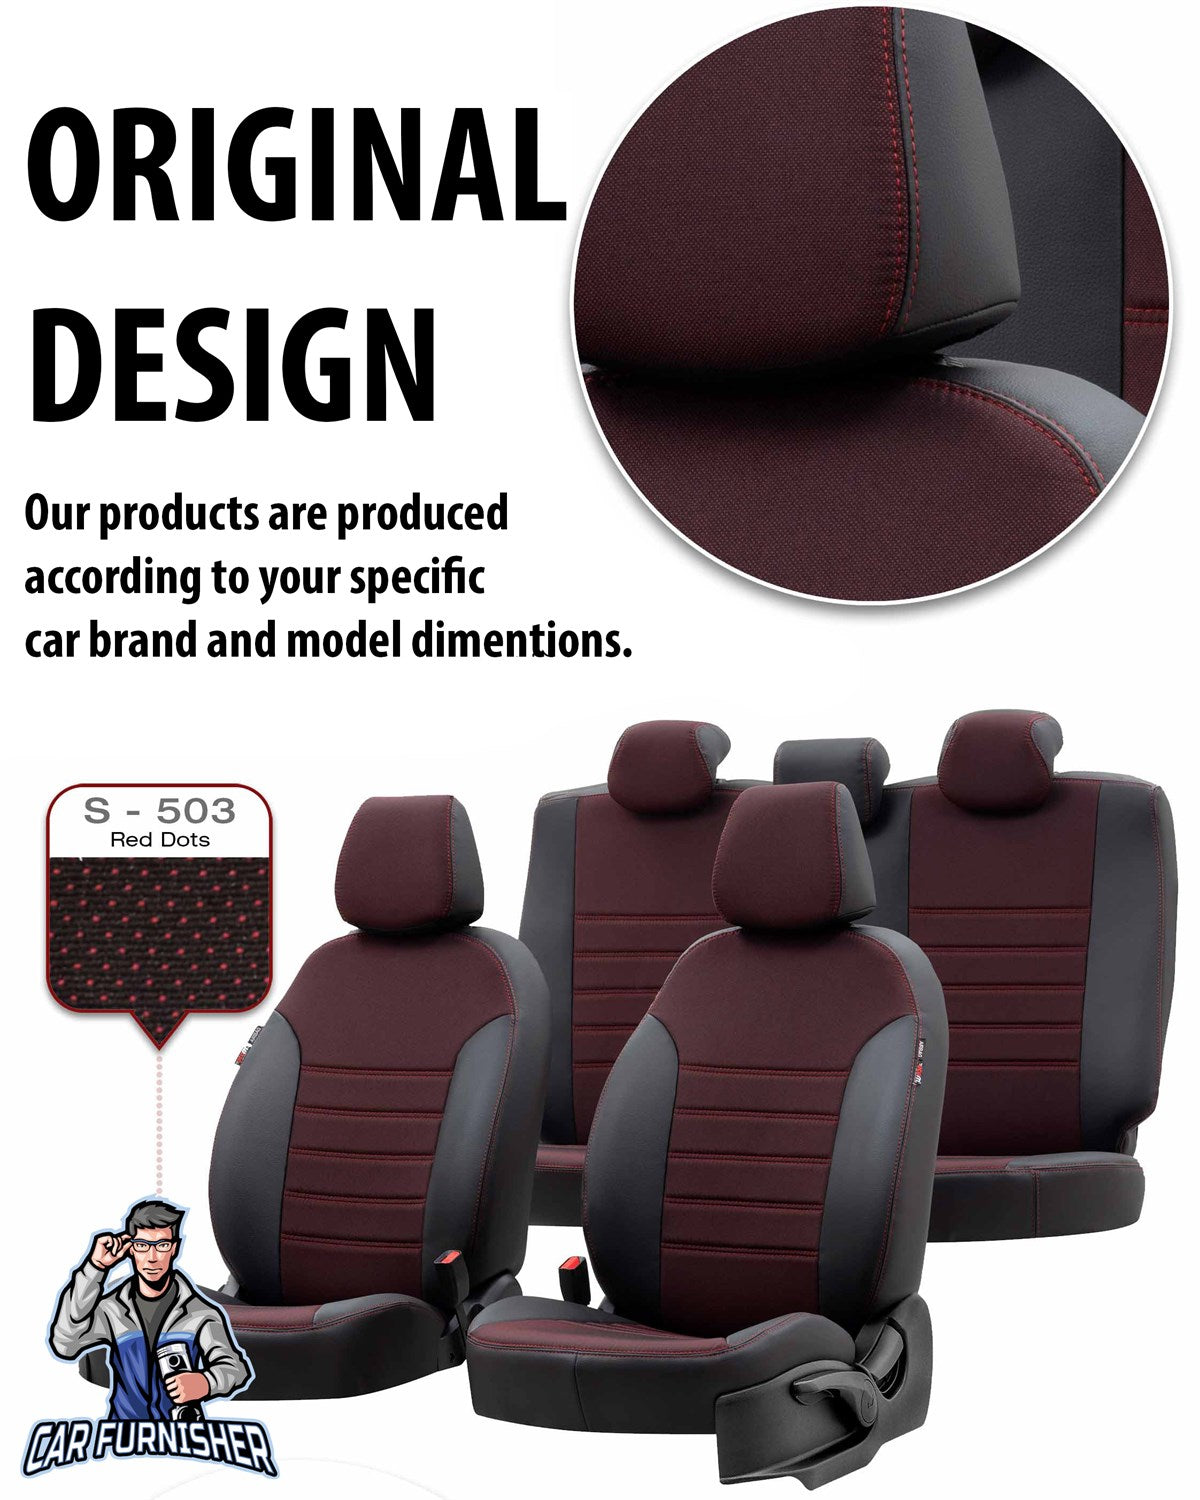 Audi Q3 Seat Cover Paris Leather & Jacquard Design Dark Beige Leather & Jacquard Fabric